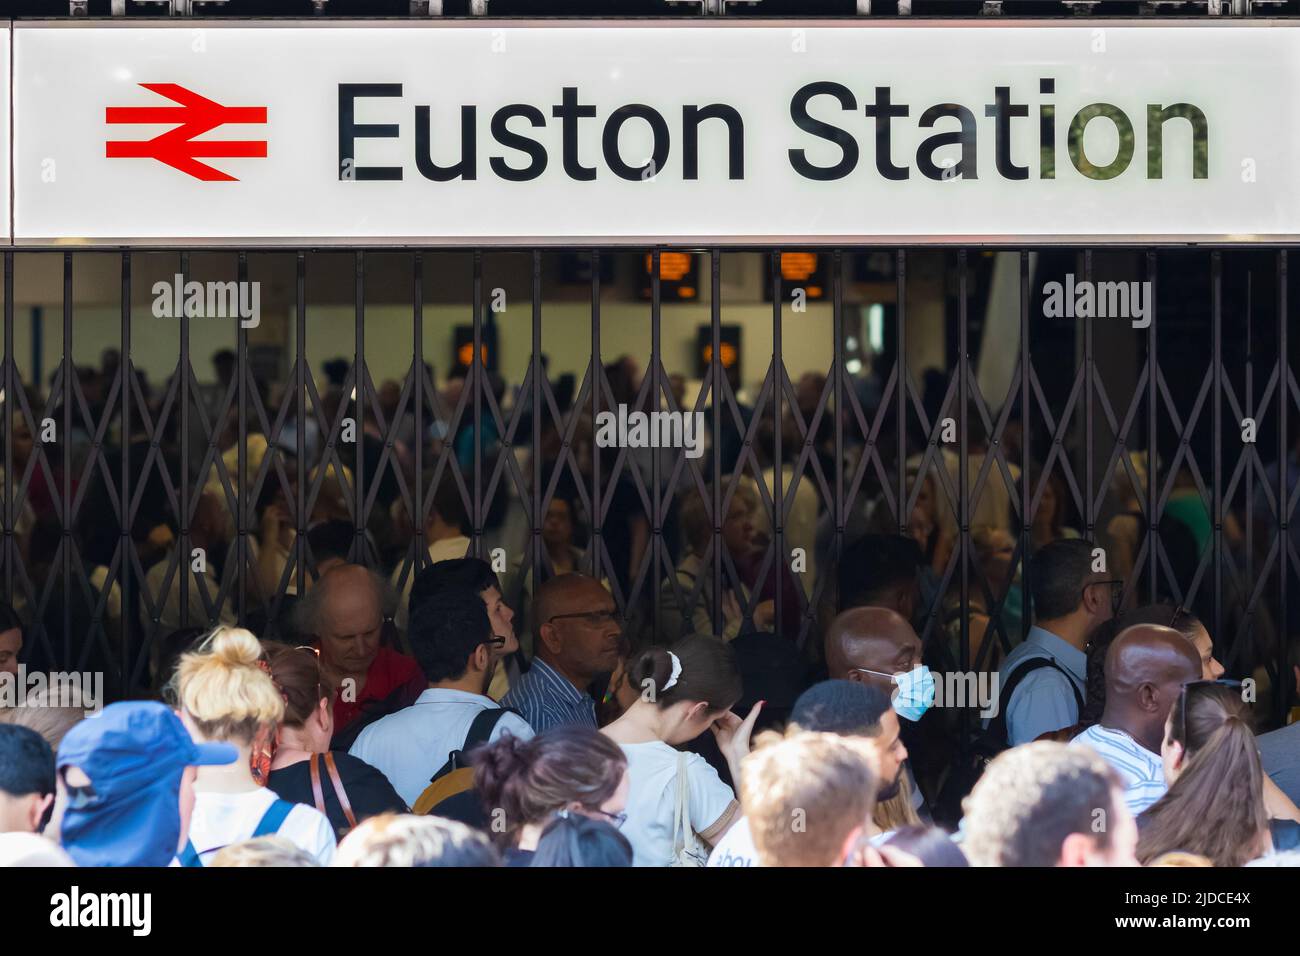 Londres, Royaume-Uni - 17 juin 2022 - une foule de passagers de train ont dû attendre devant la gare d'Euston en raison d'une fermeture temporaire du service Banque D'Images